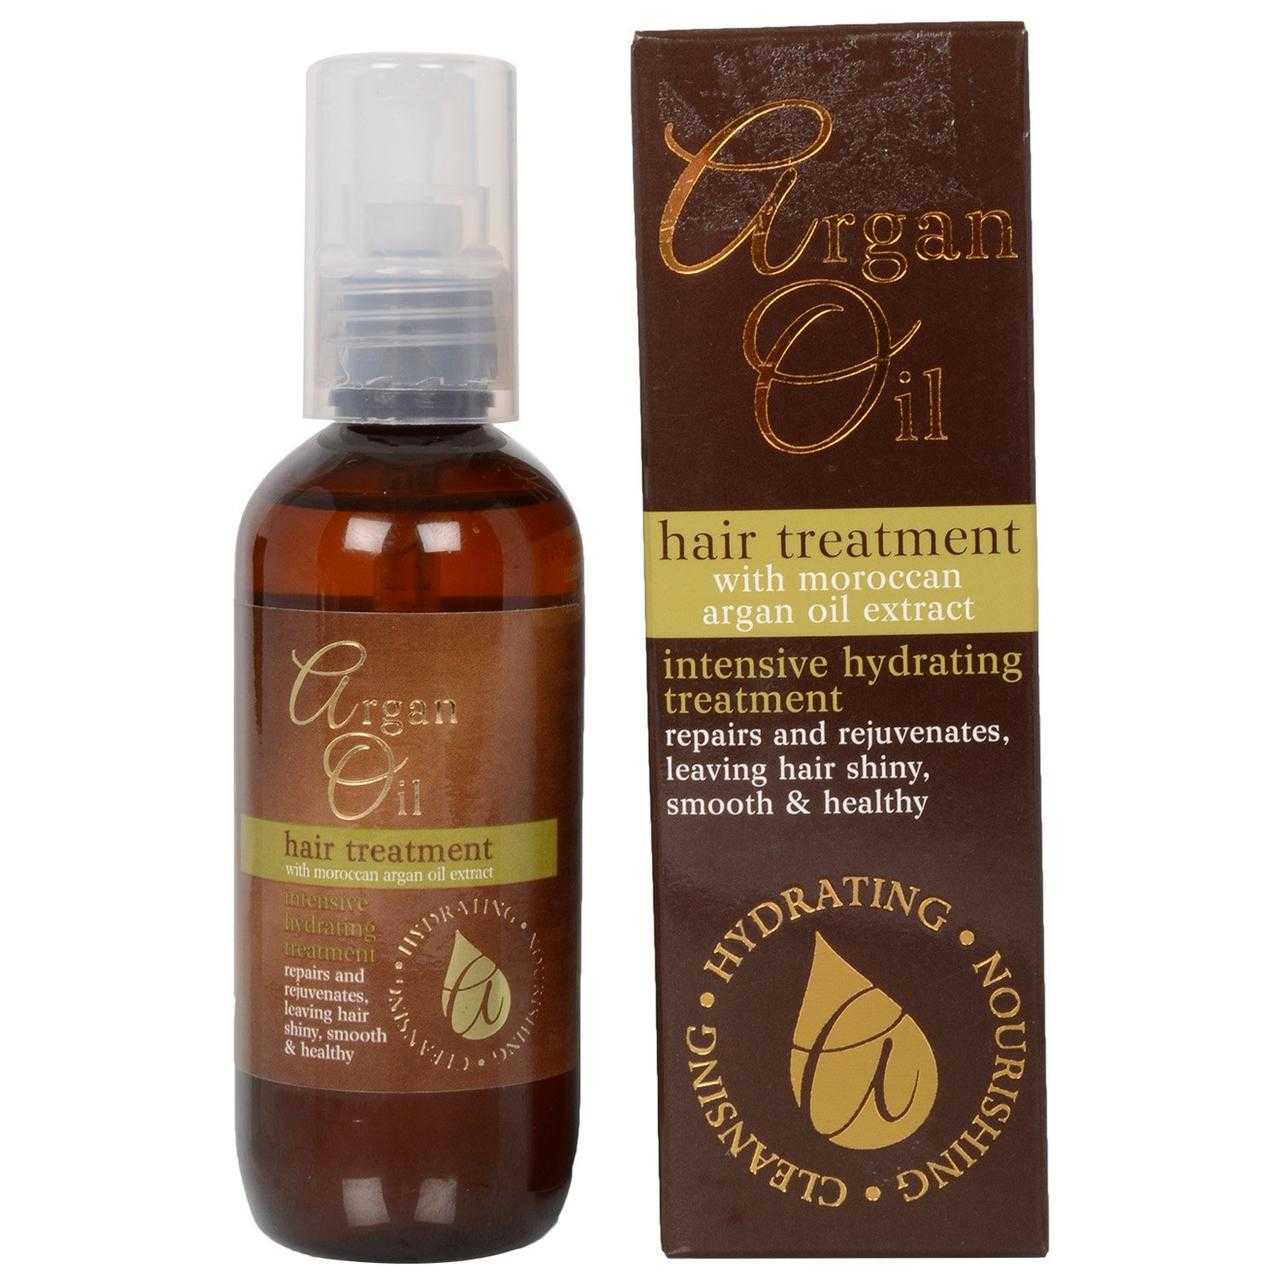 Польза арганового масла - свойства, применение для кожи и волос